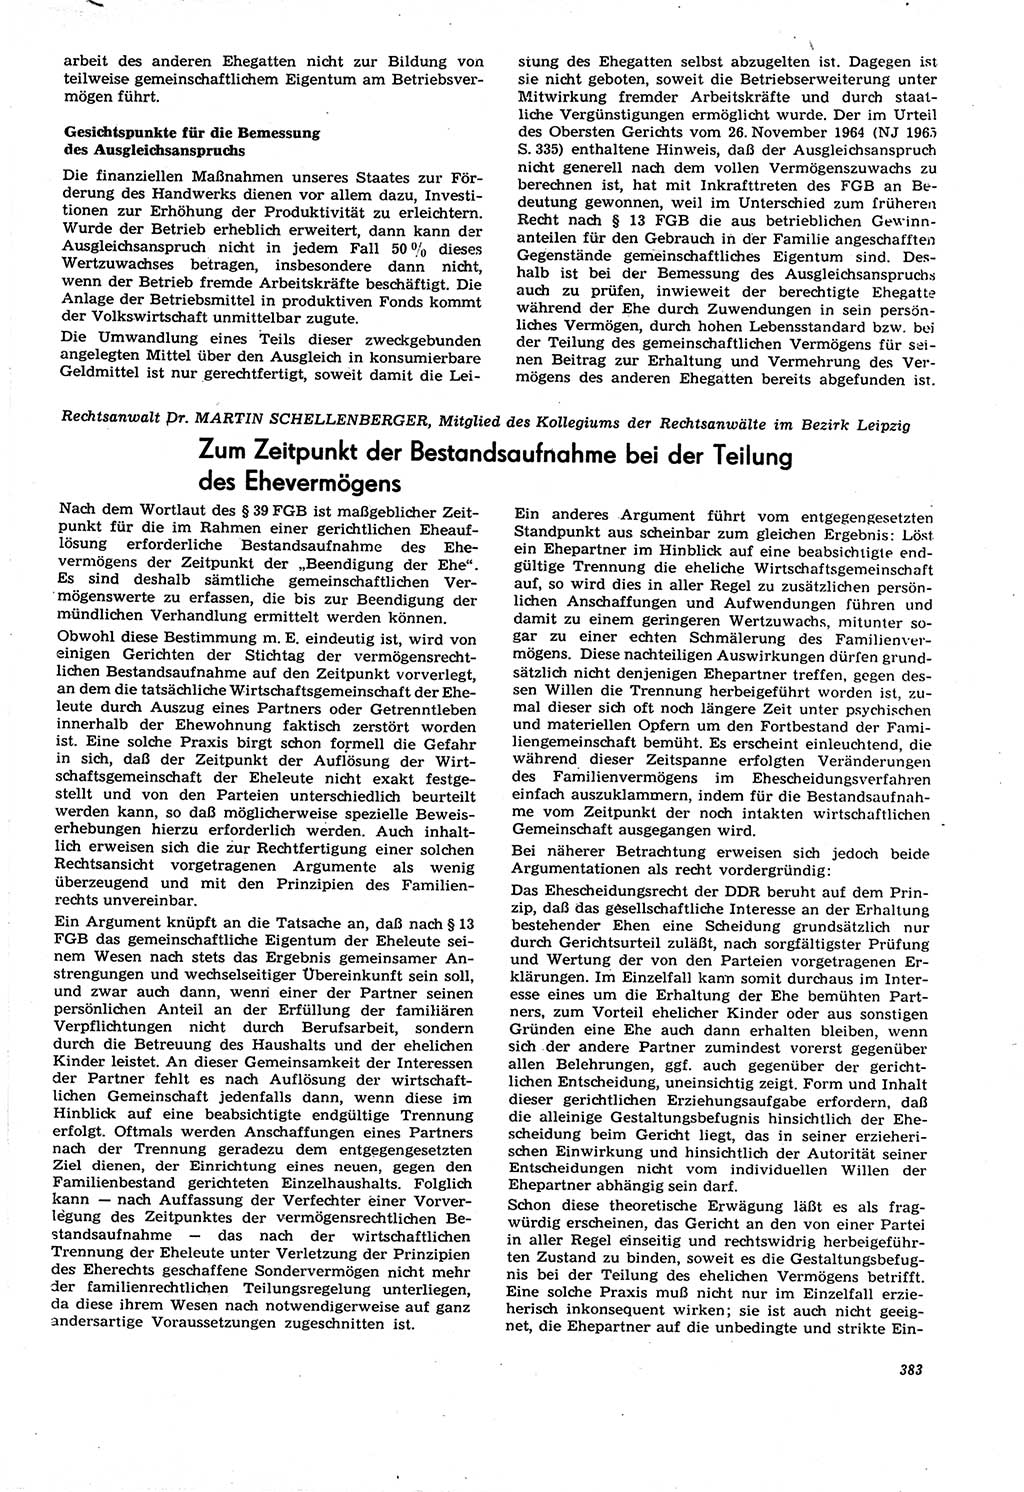 Neue Justiz (NJ), Zeitschrift für Recht und Rechtswissenschaft [Deutsche Demokratische Republik (DDR)], 21. Jahrgang 1967, Seite 383 (NJ DDR 1967, S. 383)